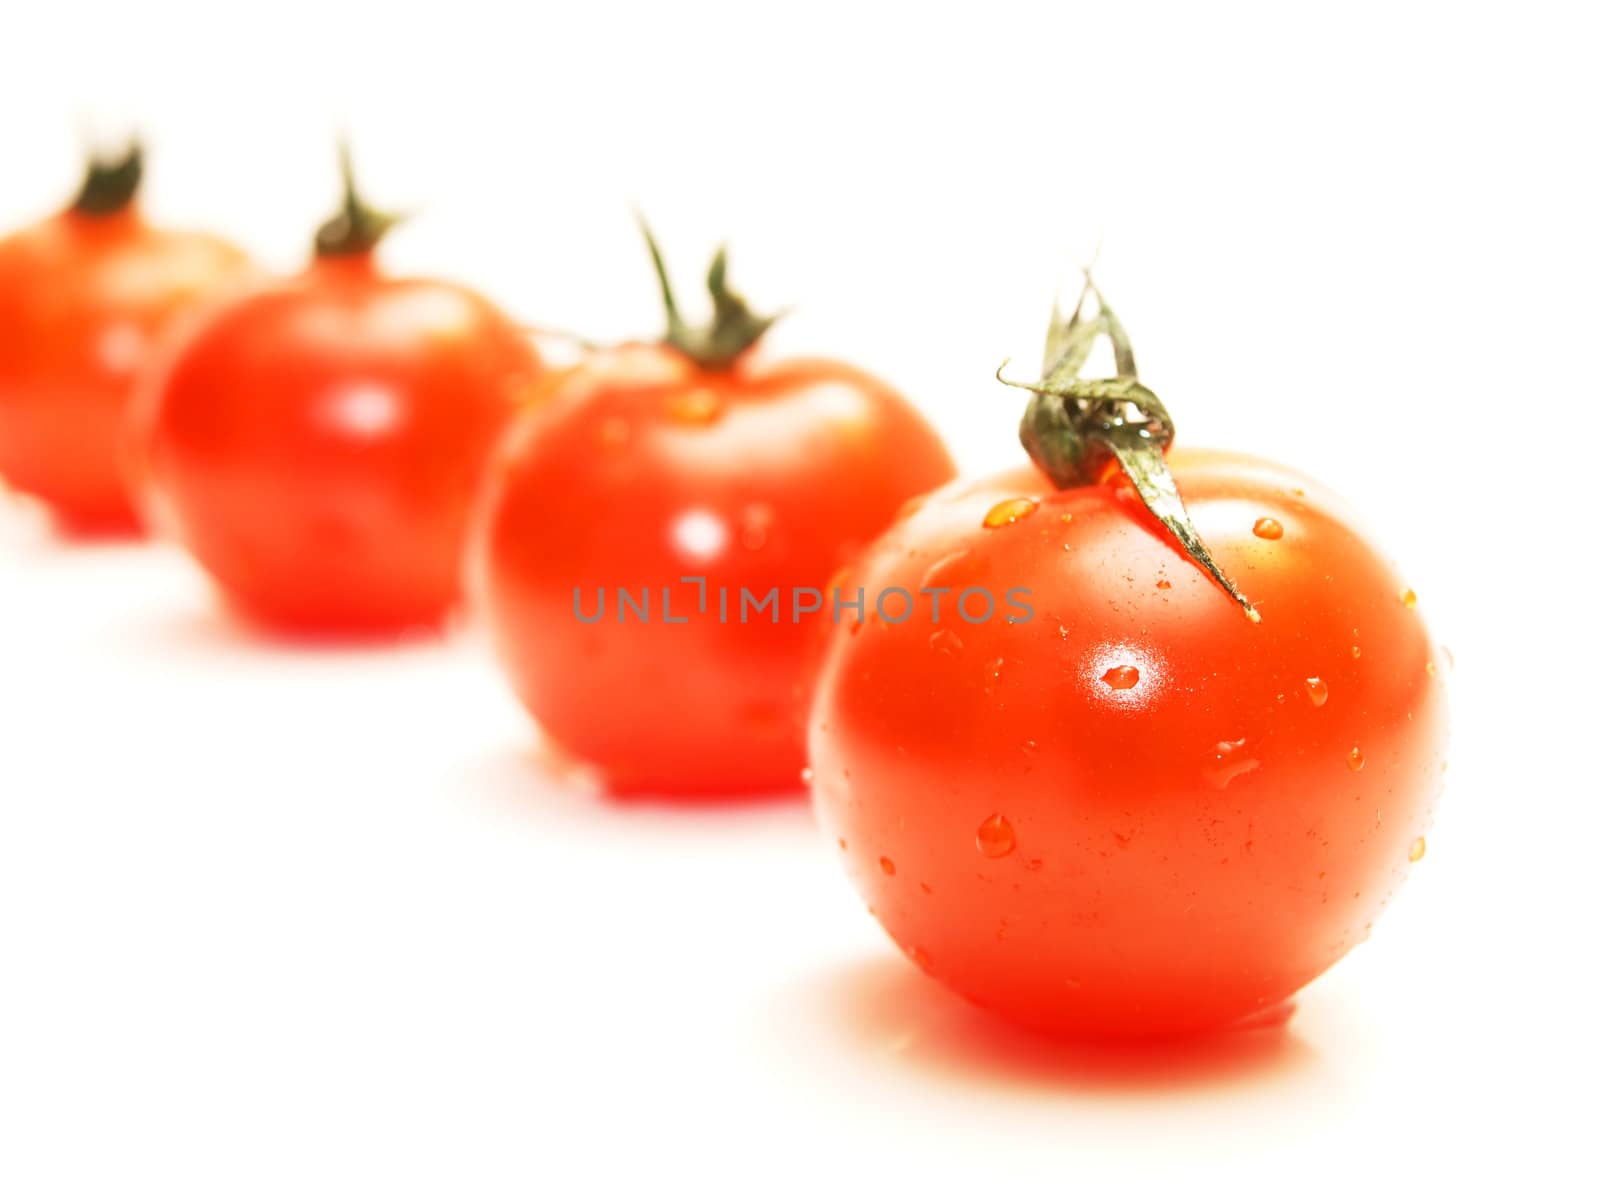 Tomato by Arvebettum